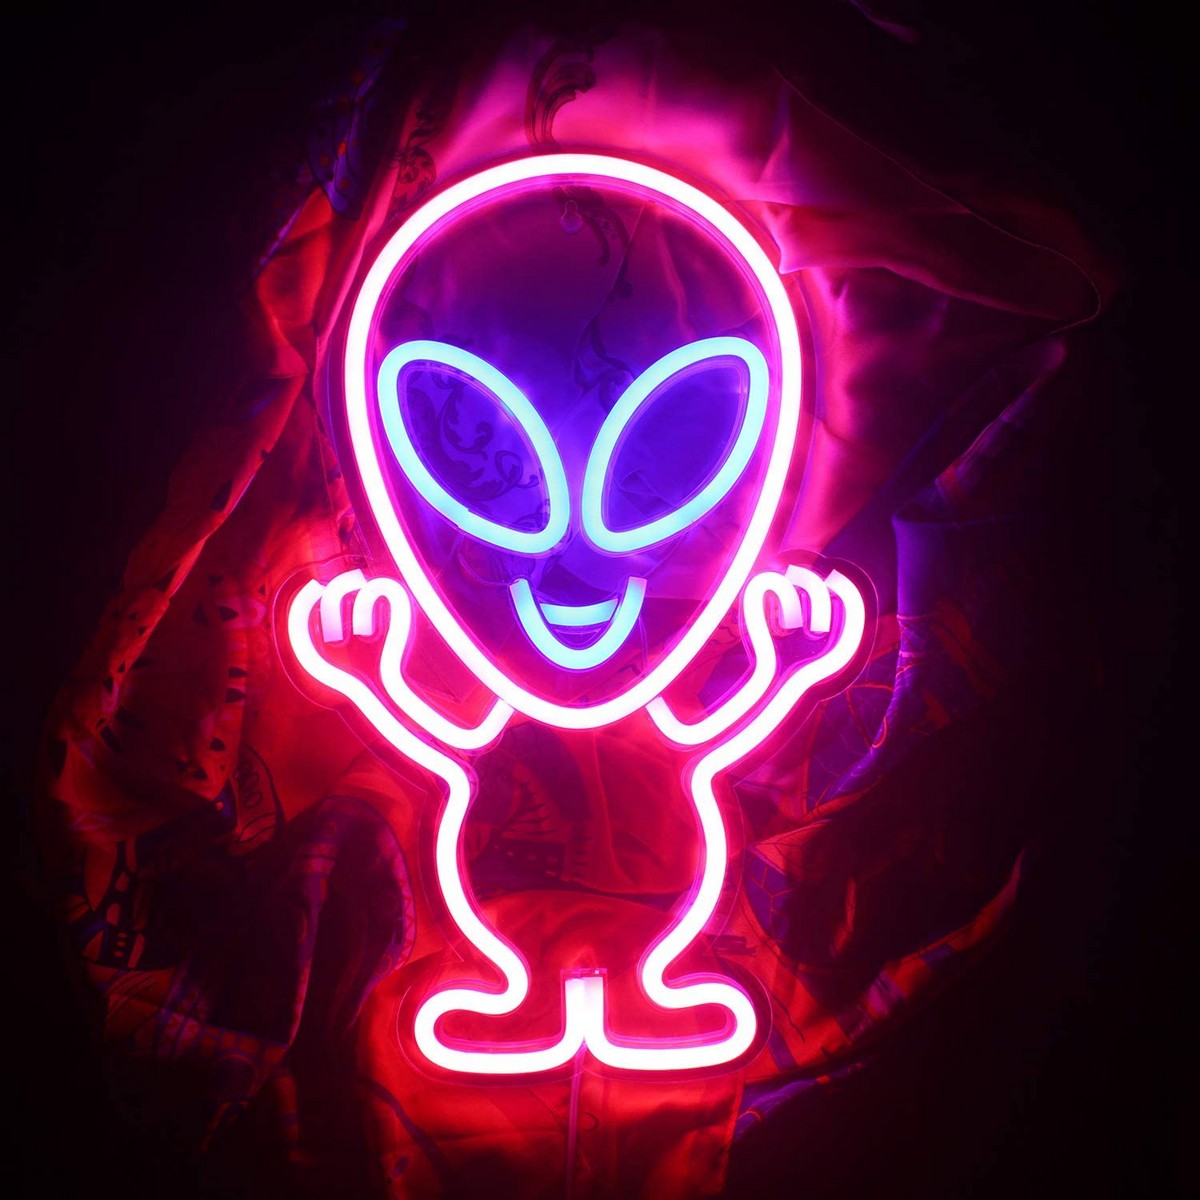 Logo neoni led që shkëlqen në mur - alien